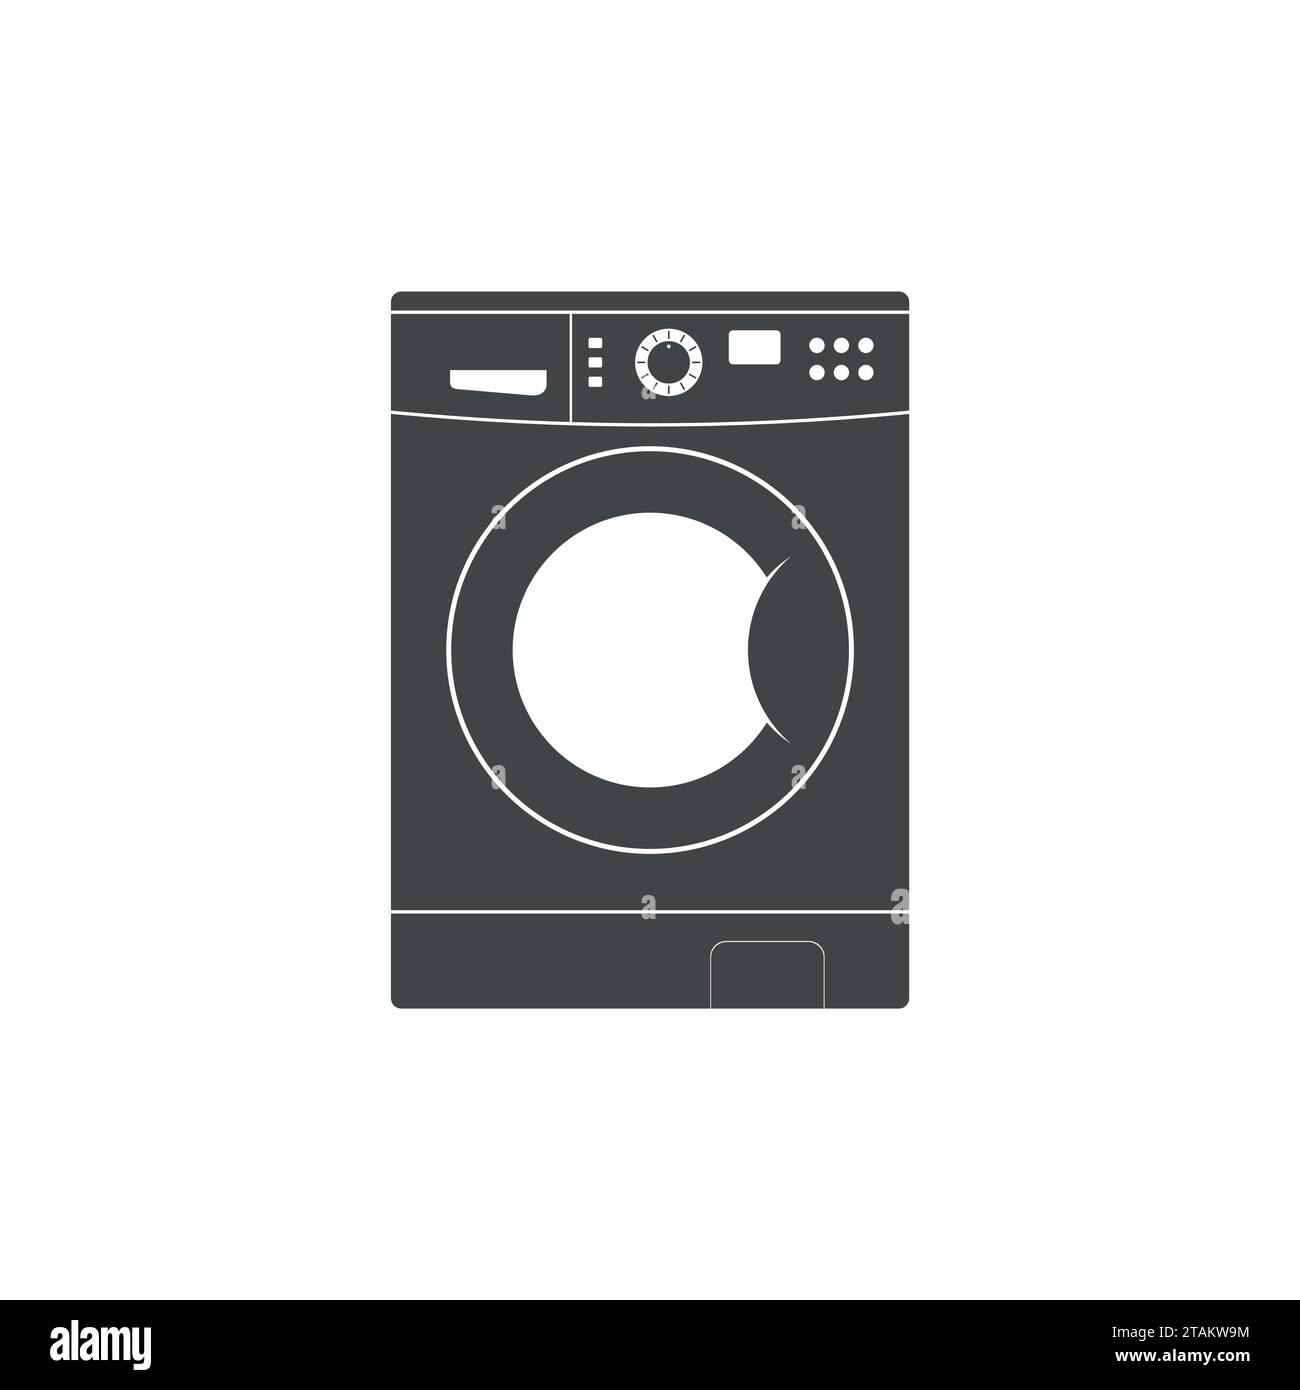 Icona della lavatrice isolata su sfondo bianco. Attrezzature lavori domestici lavanderia e biancheria. Icona rondella piatta. Illustrazione Vettoriale